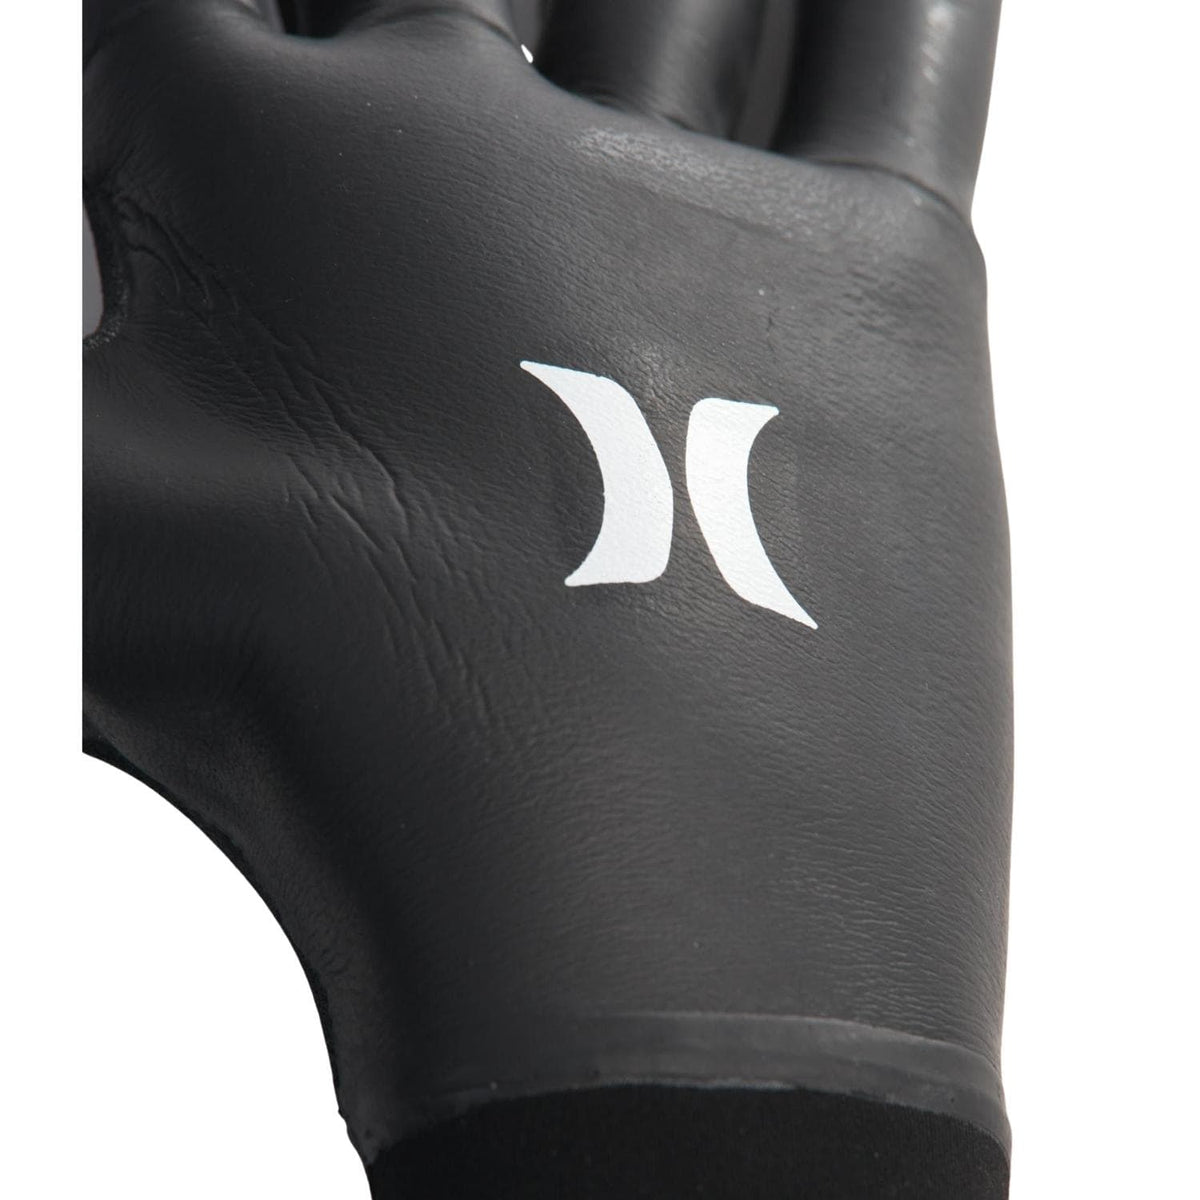 Hurley Advantage Plus 3mm Wetsuit Gloves - Black - Mitten Wetsuit Gloves by Hurley